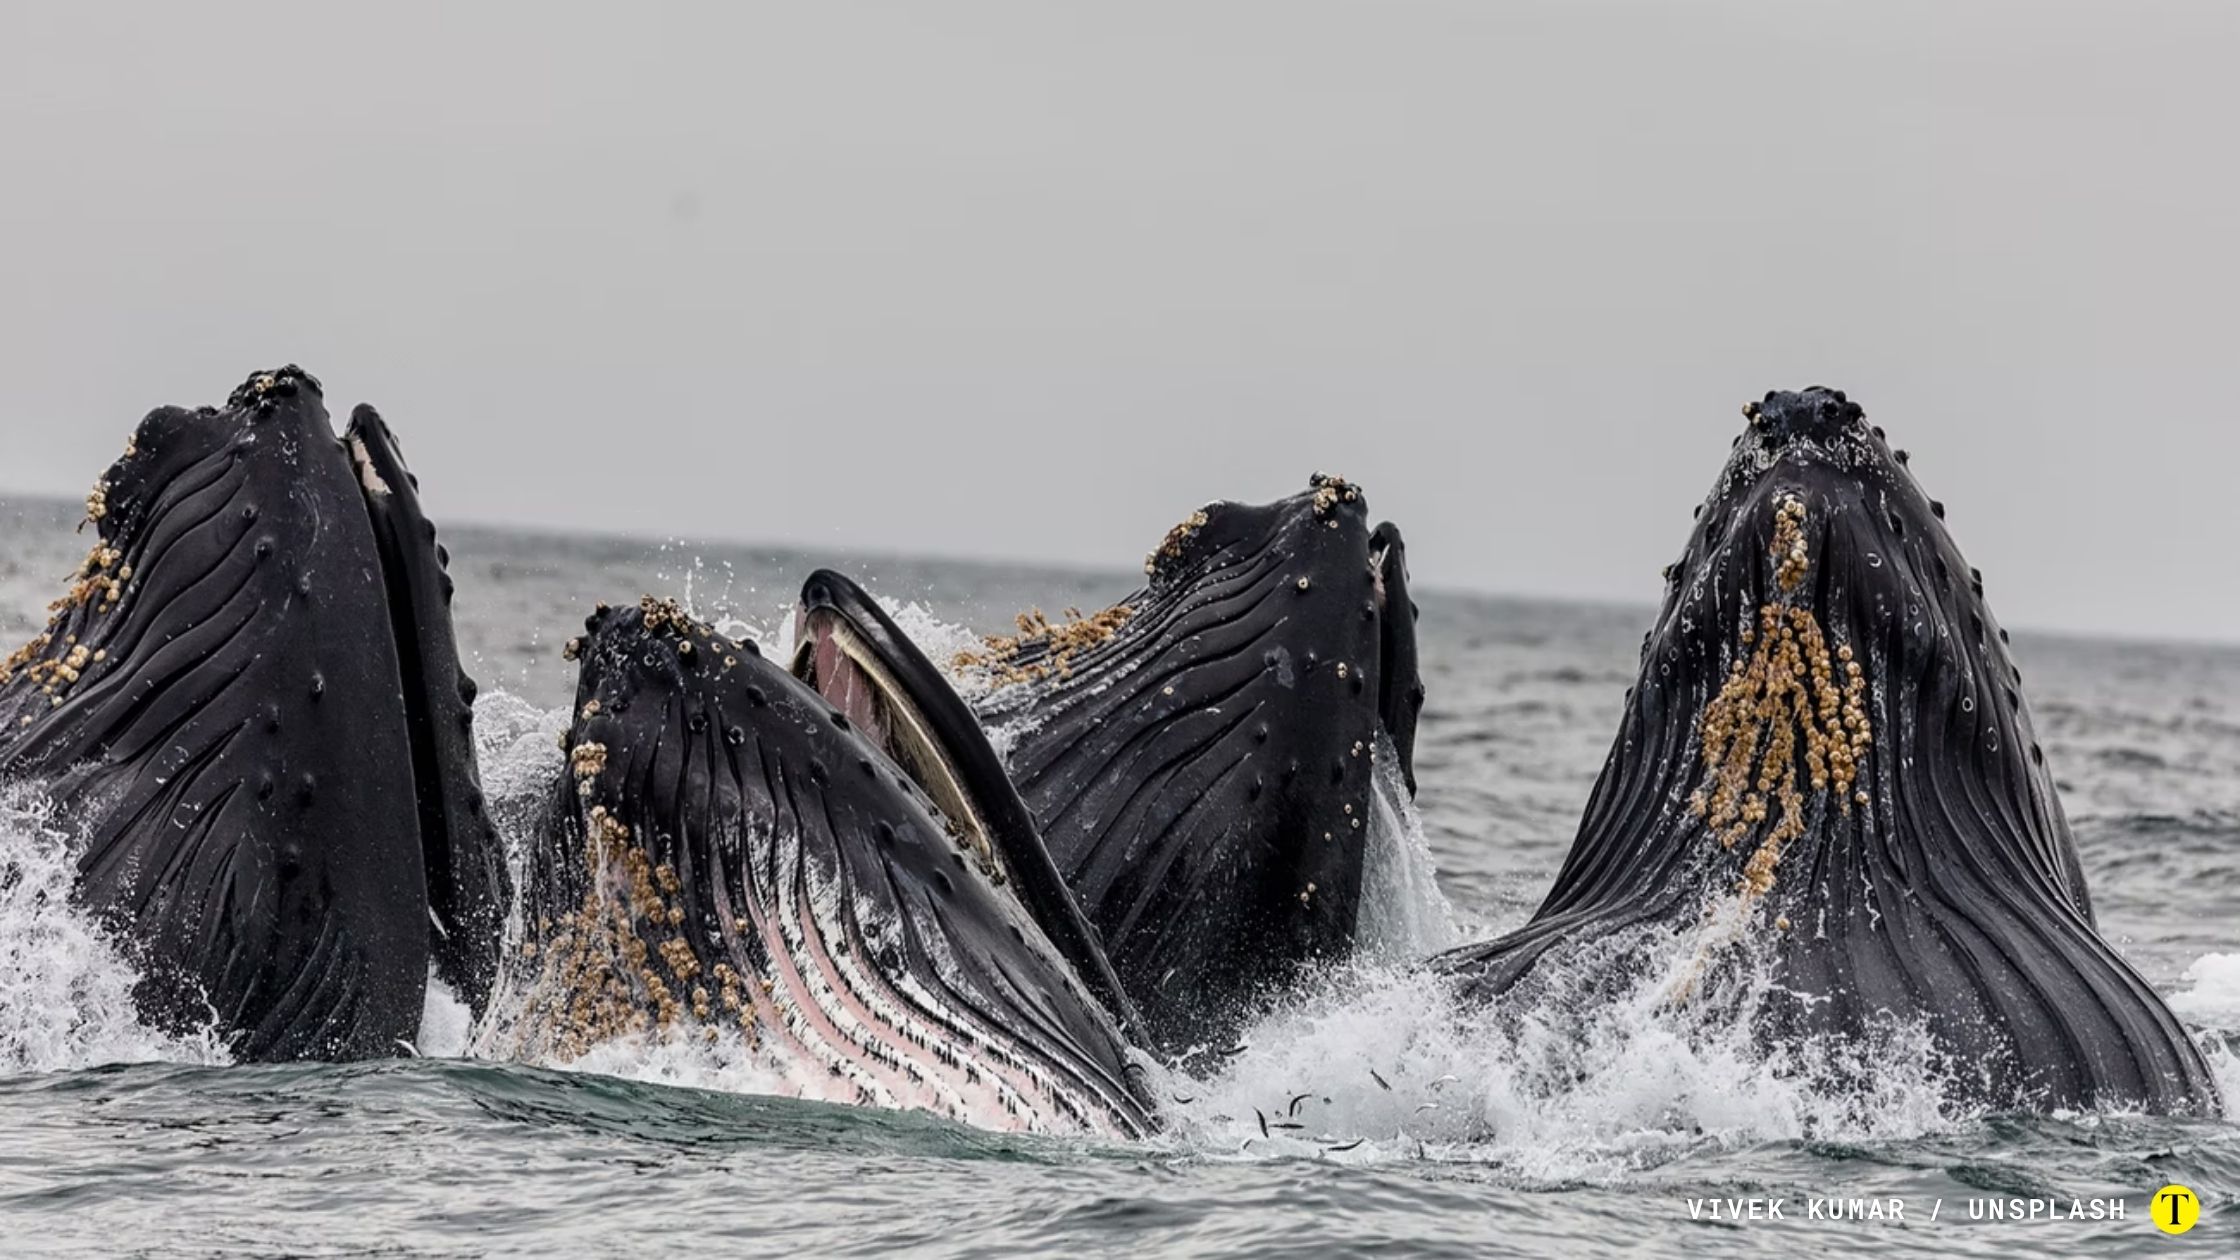 Cerca de mil ballenas murieron tras ser cazadas, mientras que otras 20 mil fallecieron por choques con cruceros, barcos o flotas pesqueras. Foto: Vivek Kumar / Unsplash